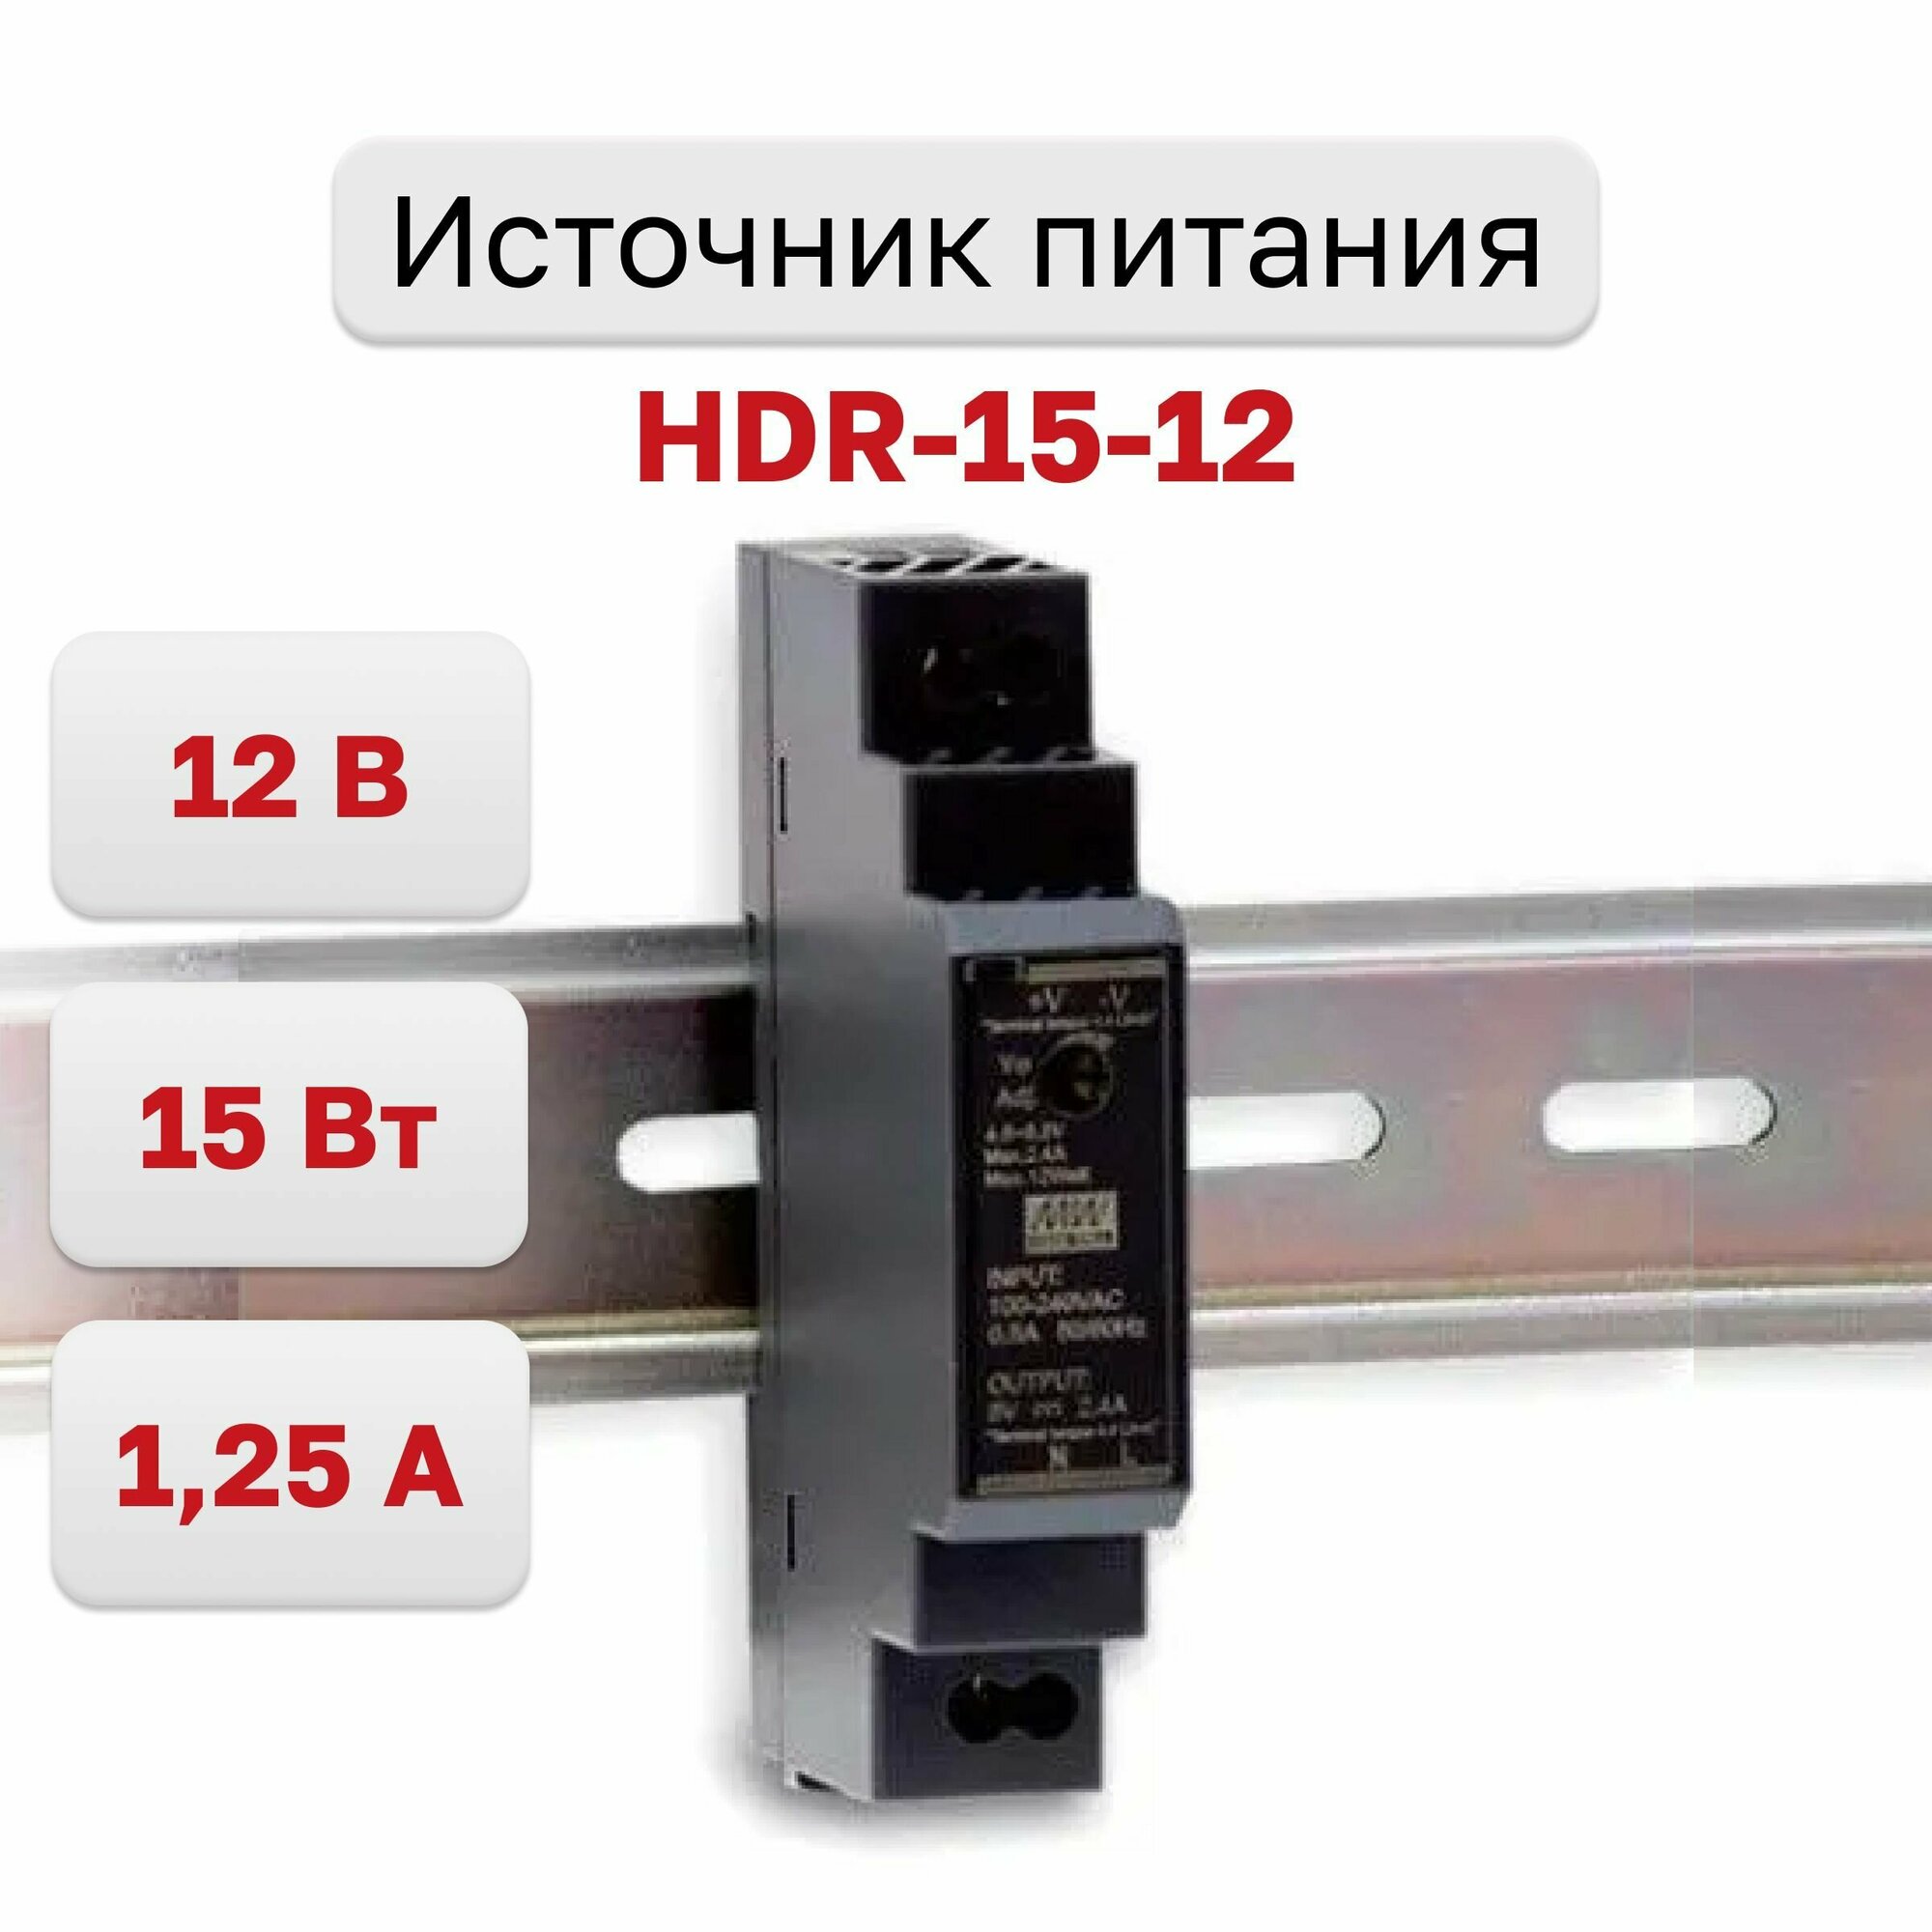 Источник питания HDR-15-12